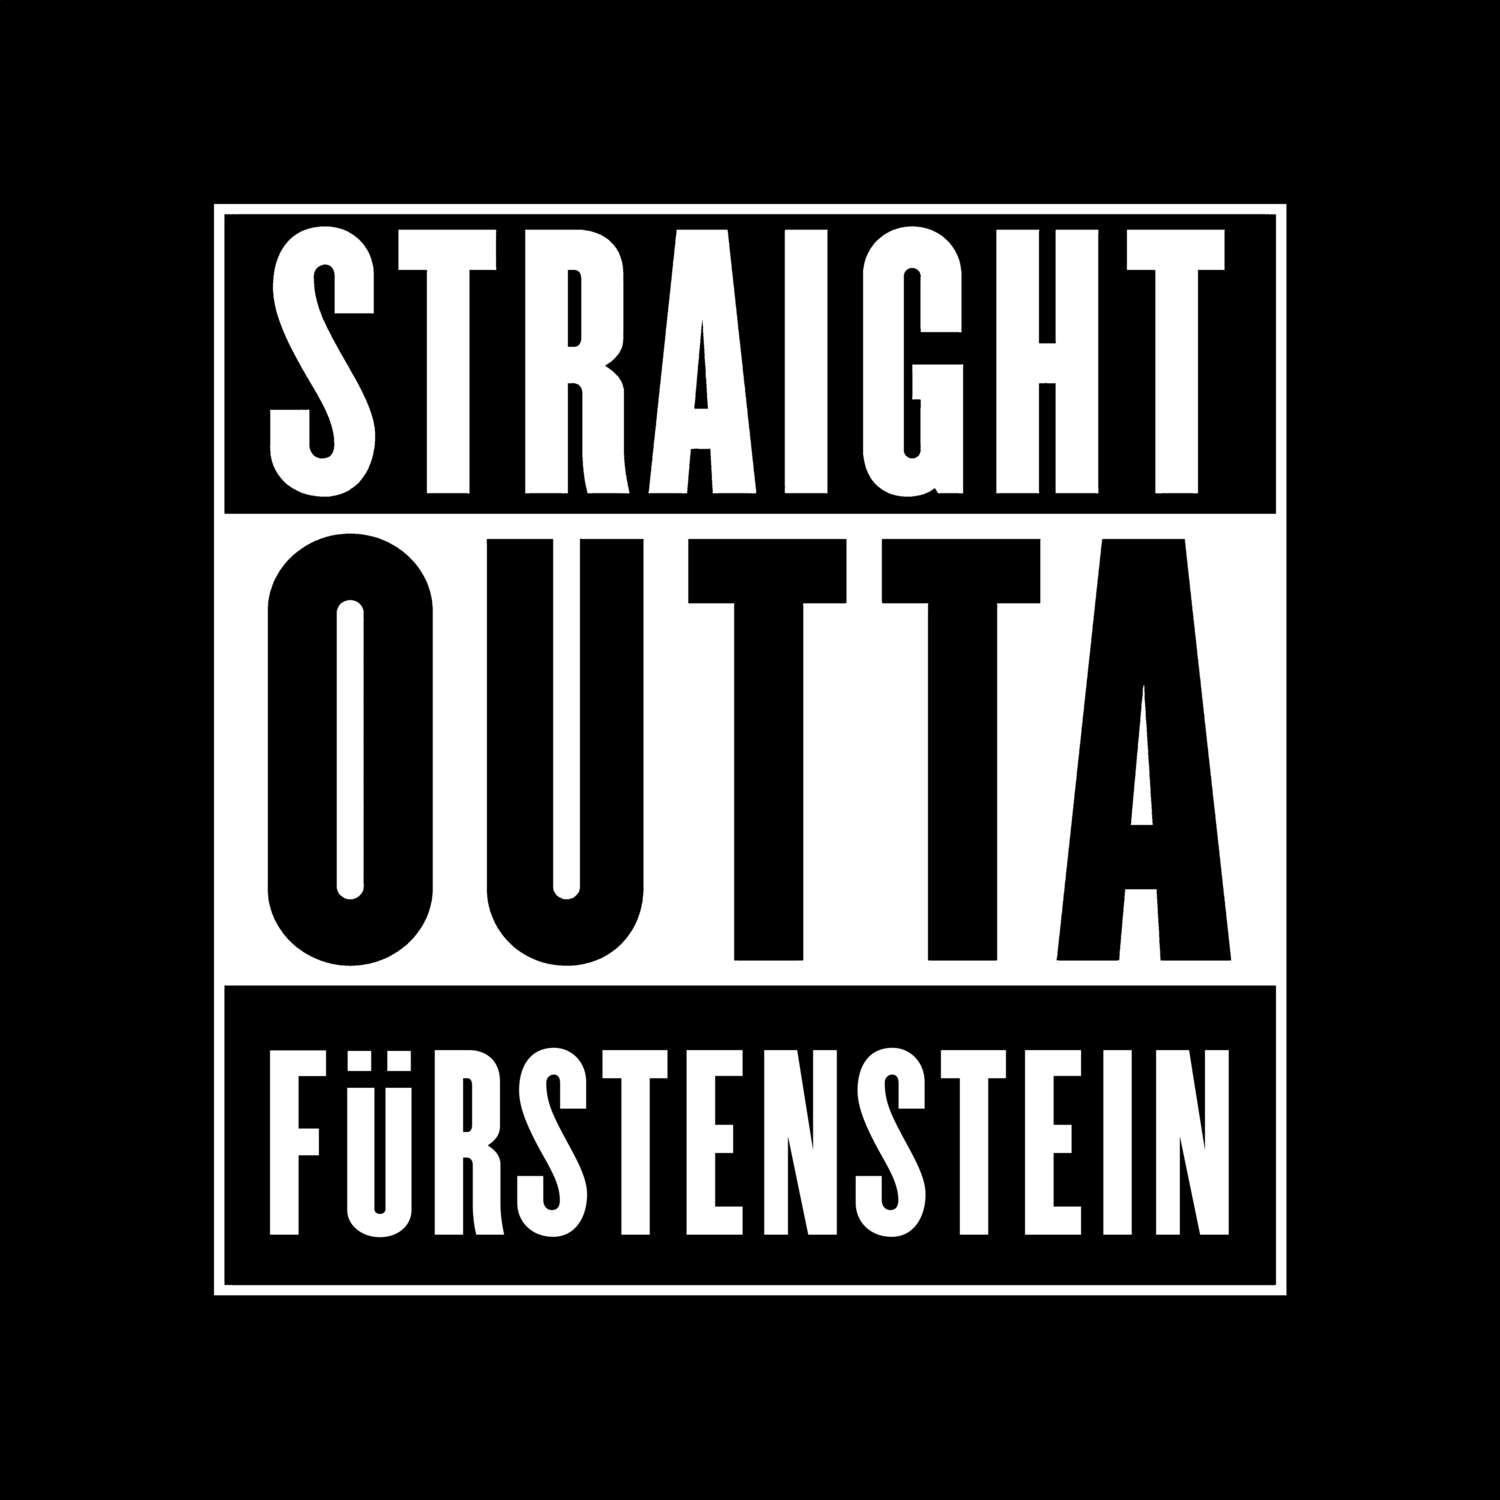 Fürstenstein T-Shirt »Straight Outta«